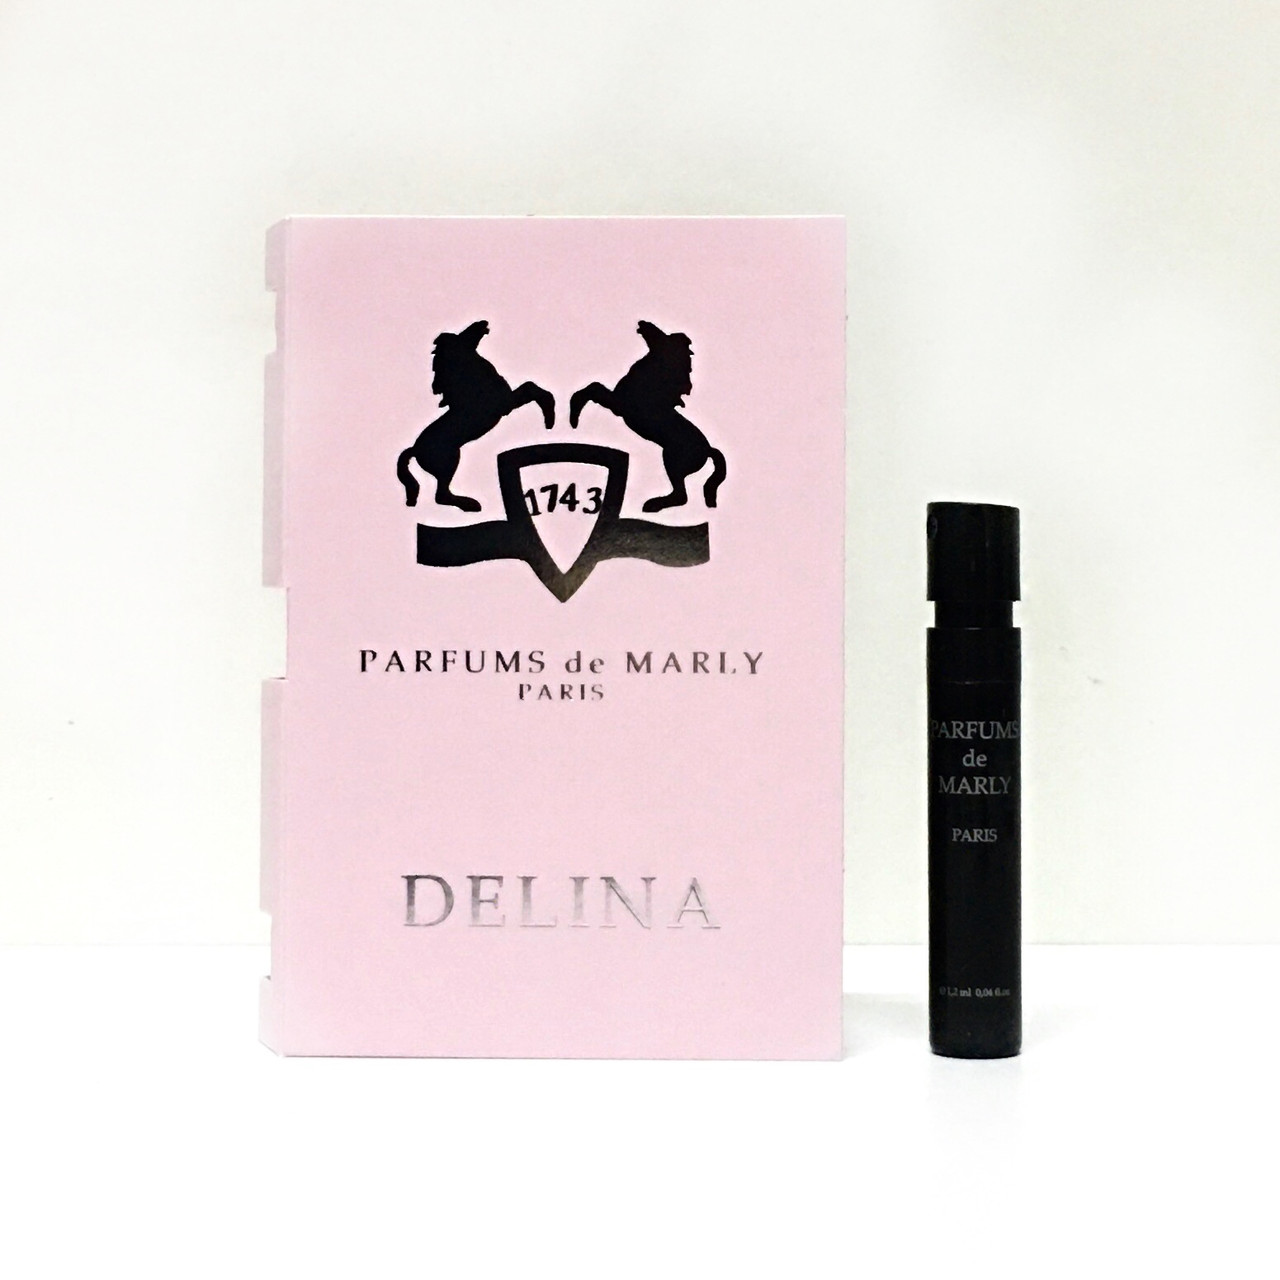 PARFUMS de MARLY Delina (ПРОБНИК) парфюмированная вода Парфюмс де Марли Делина ОРИГИНАЛ